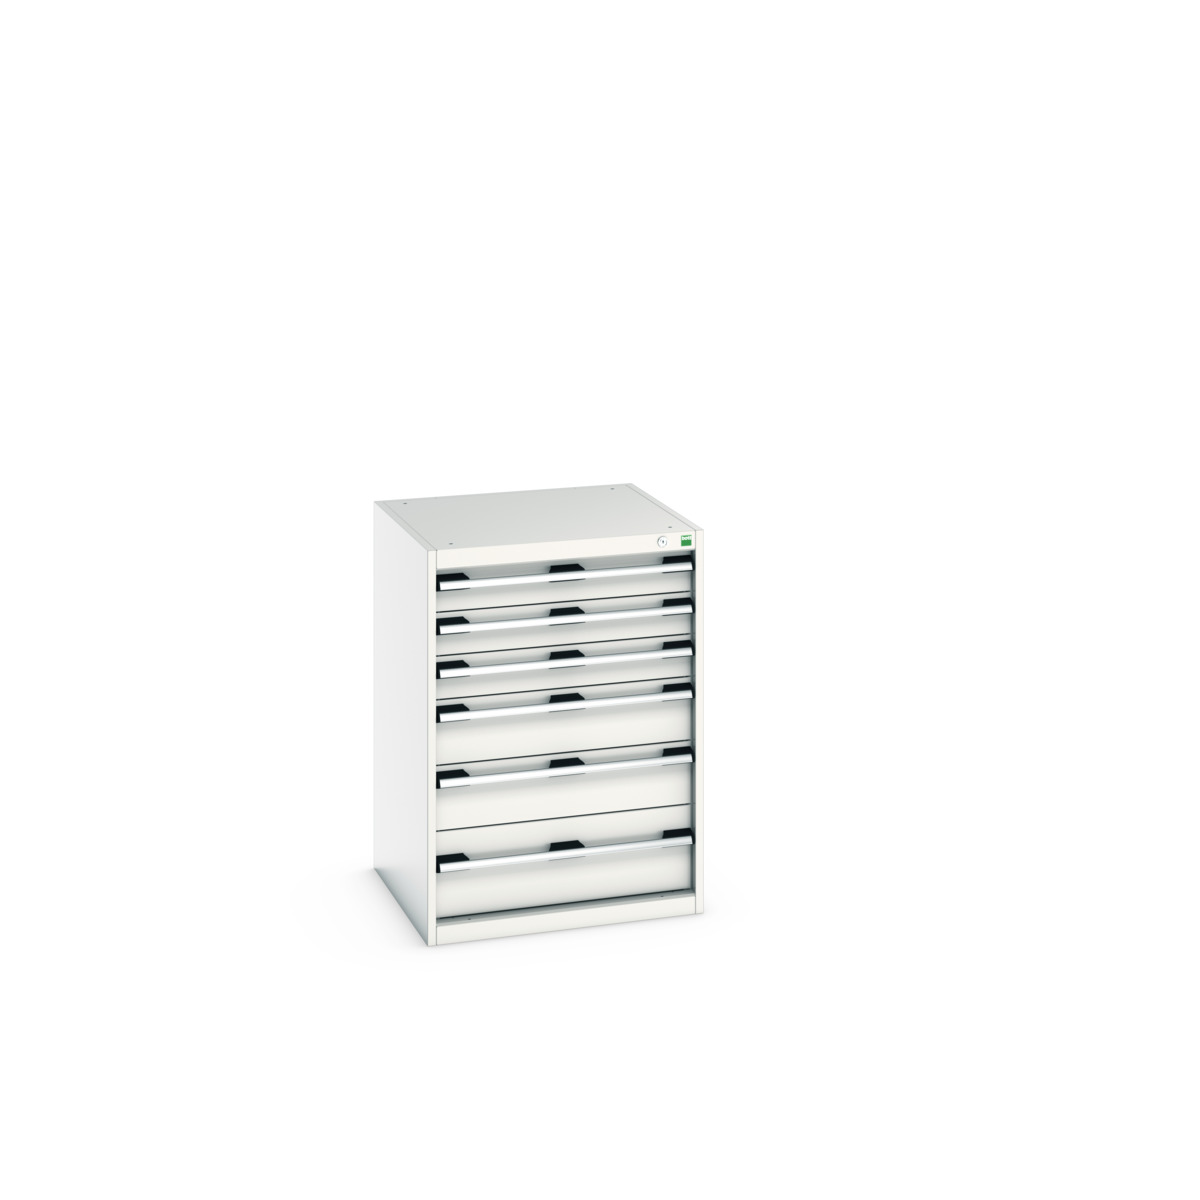 40019049.16V - cubio drawer cabinet